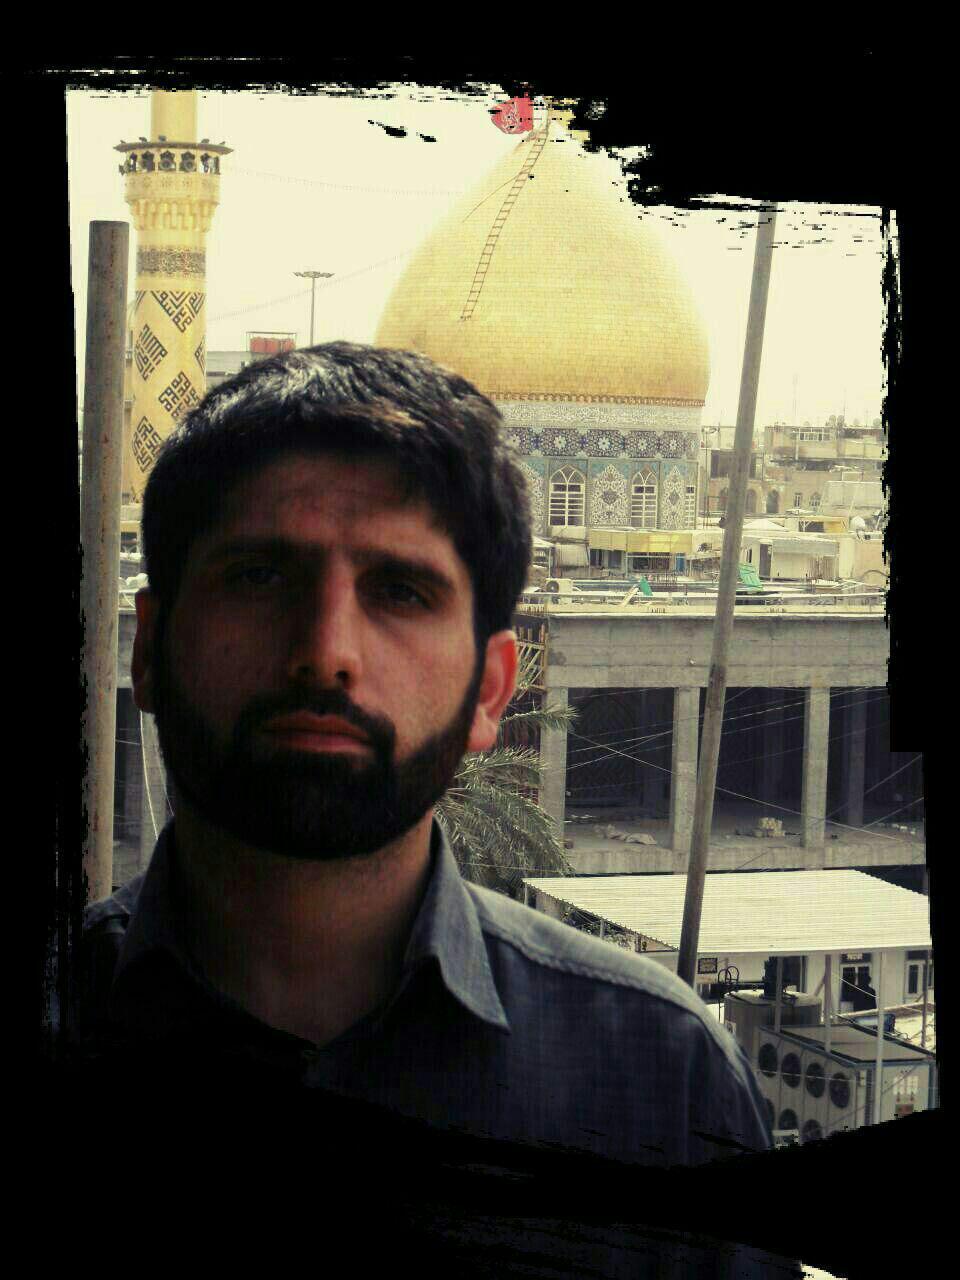 حاج مرتضی یک افسر ارشد و متخصص در سطح کشور بود/ زندگینامه شهید مرتضی مسیب زاده +تصاویر